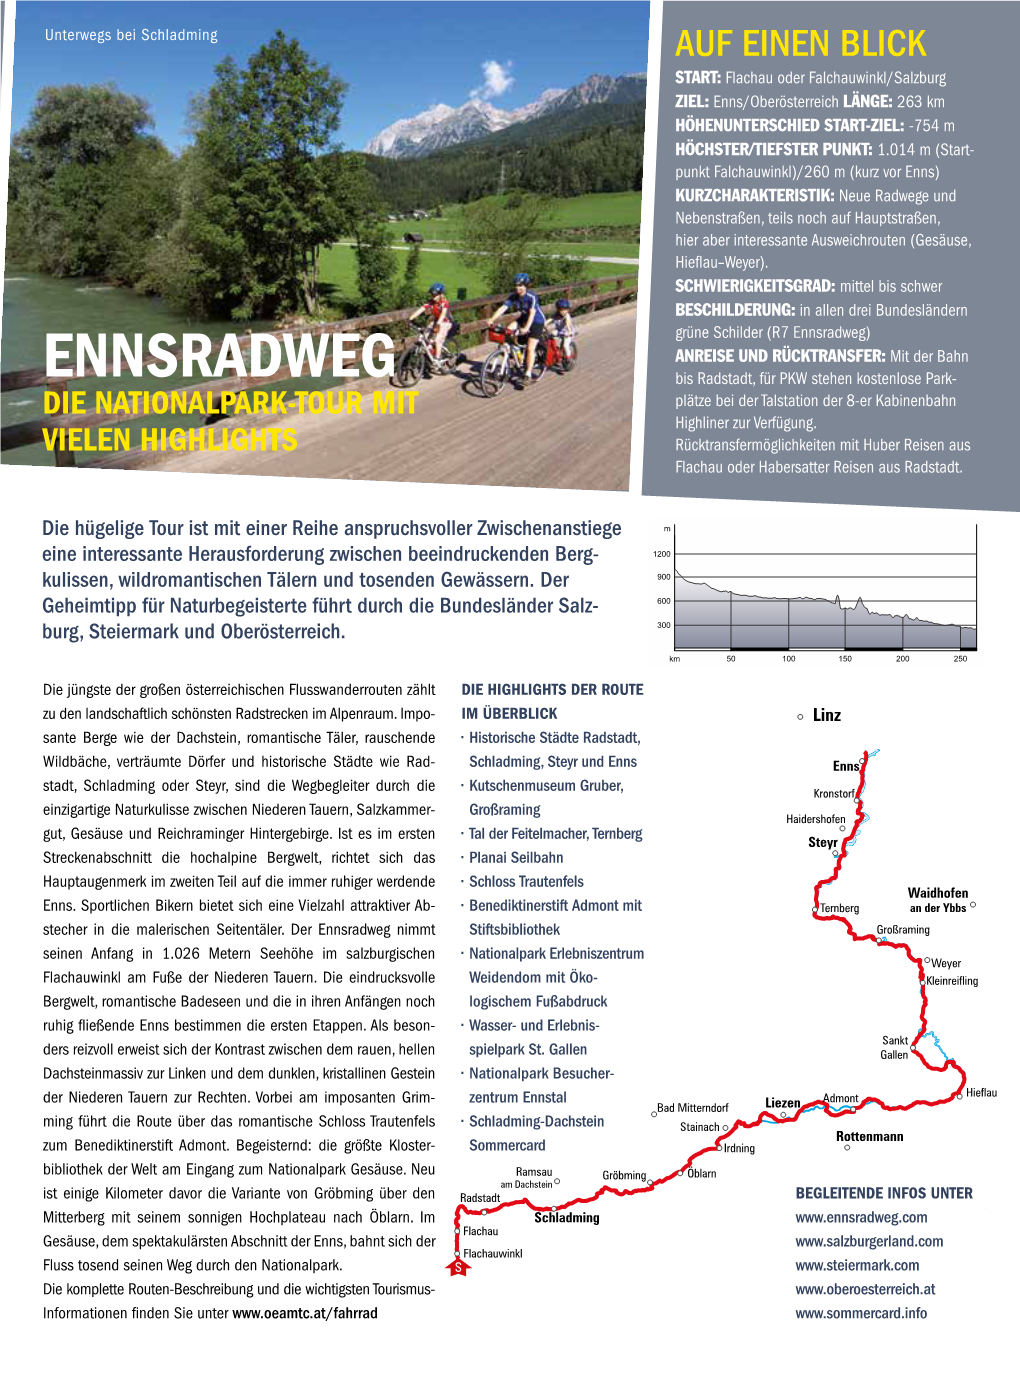 Route Ennsradweg